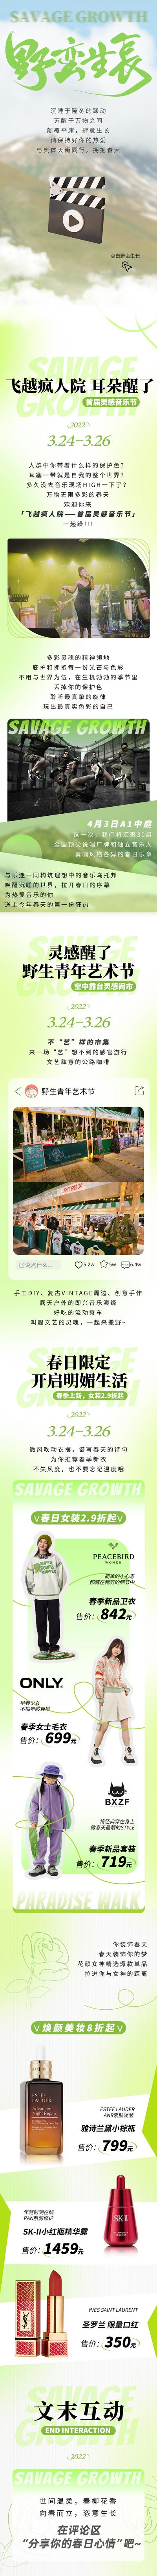 南门网 专题设计 长图 商业 商场 春天 新媒体 市集 活动 绿色 简约